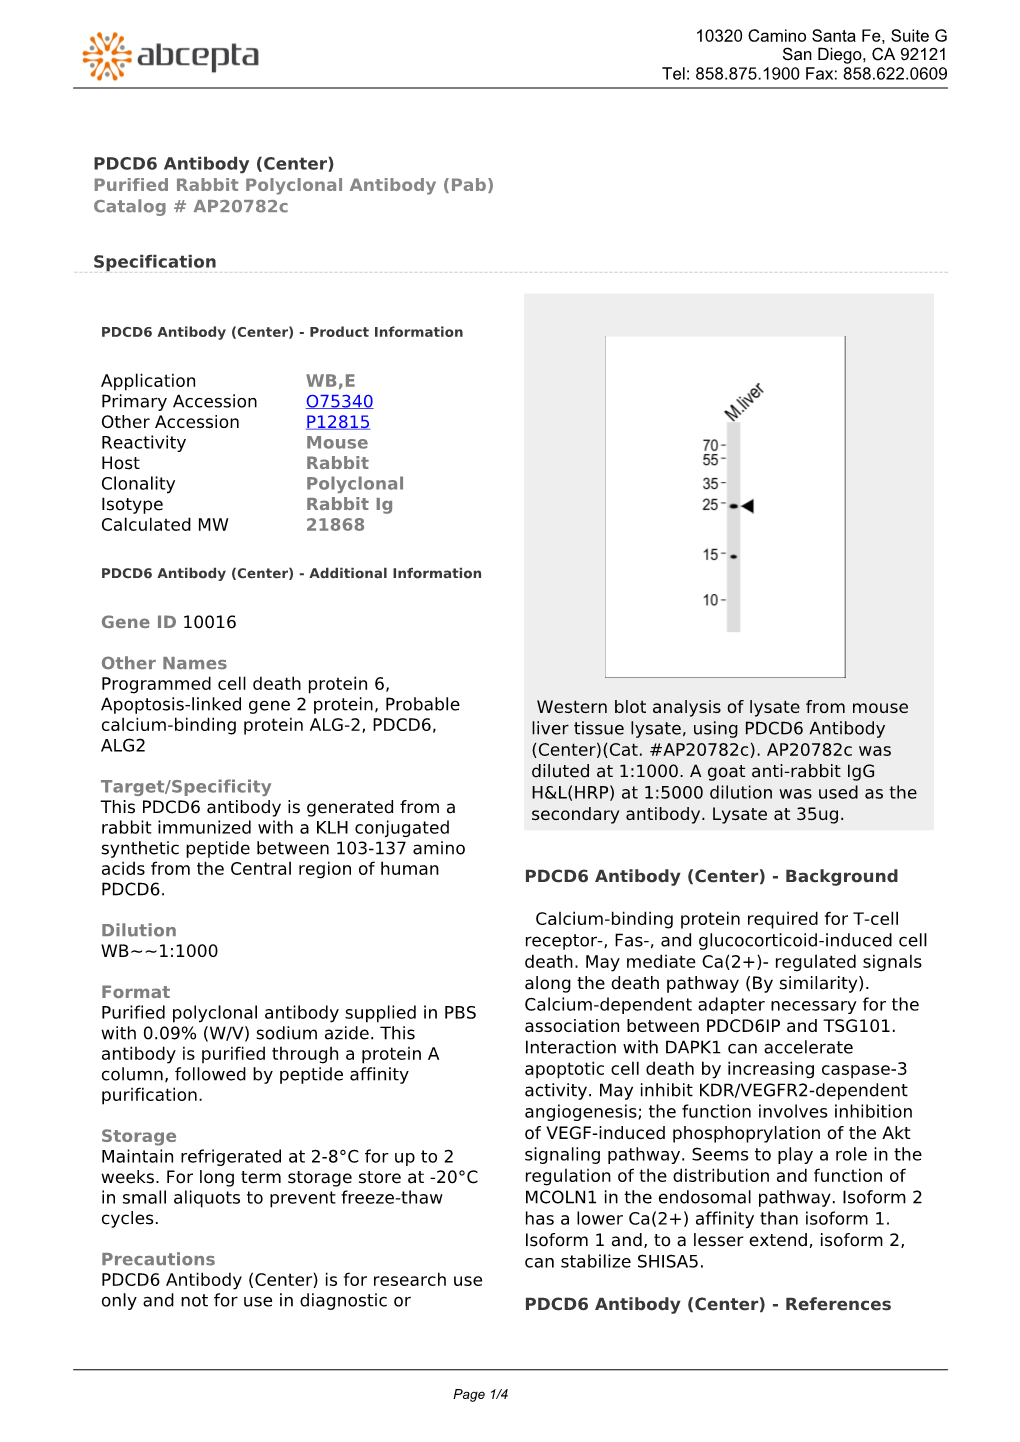 PDCD6 Antibody (Center) Purified Rabbit Polyclonal Antibody (Pab) Catalog # Ap20782c